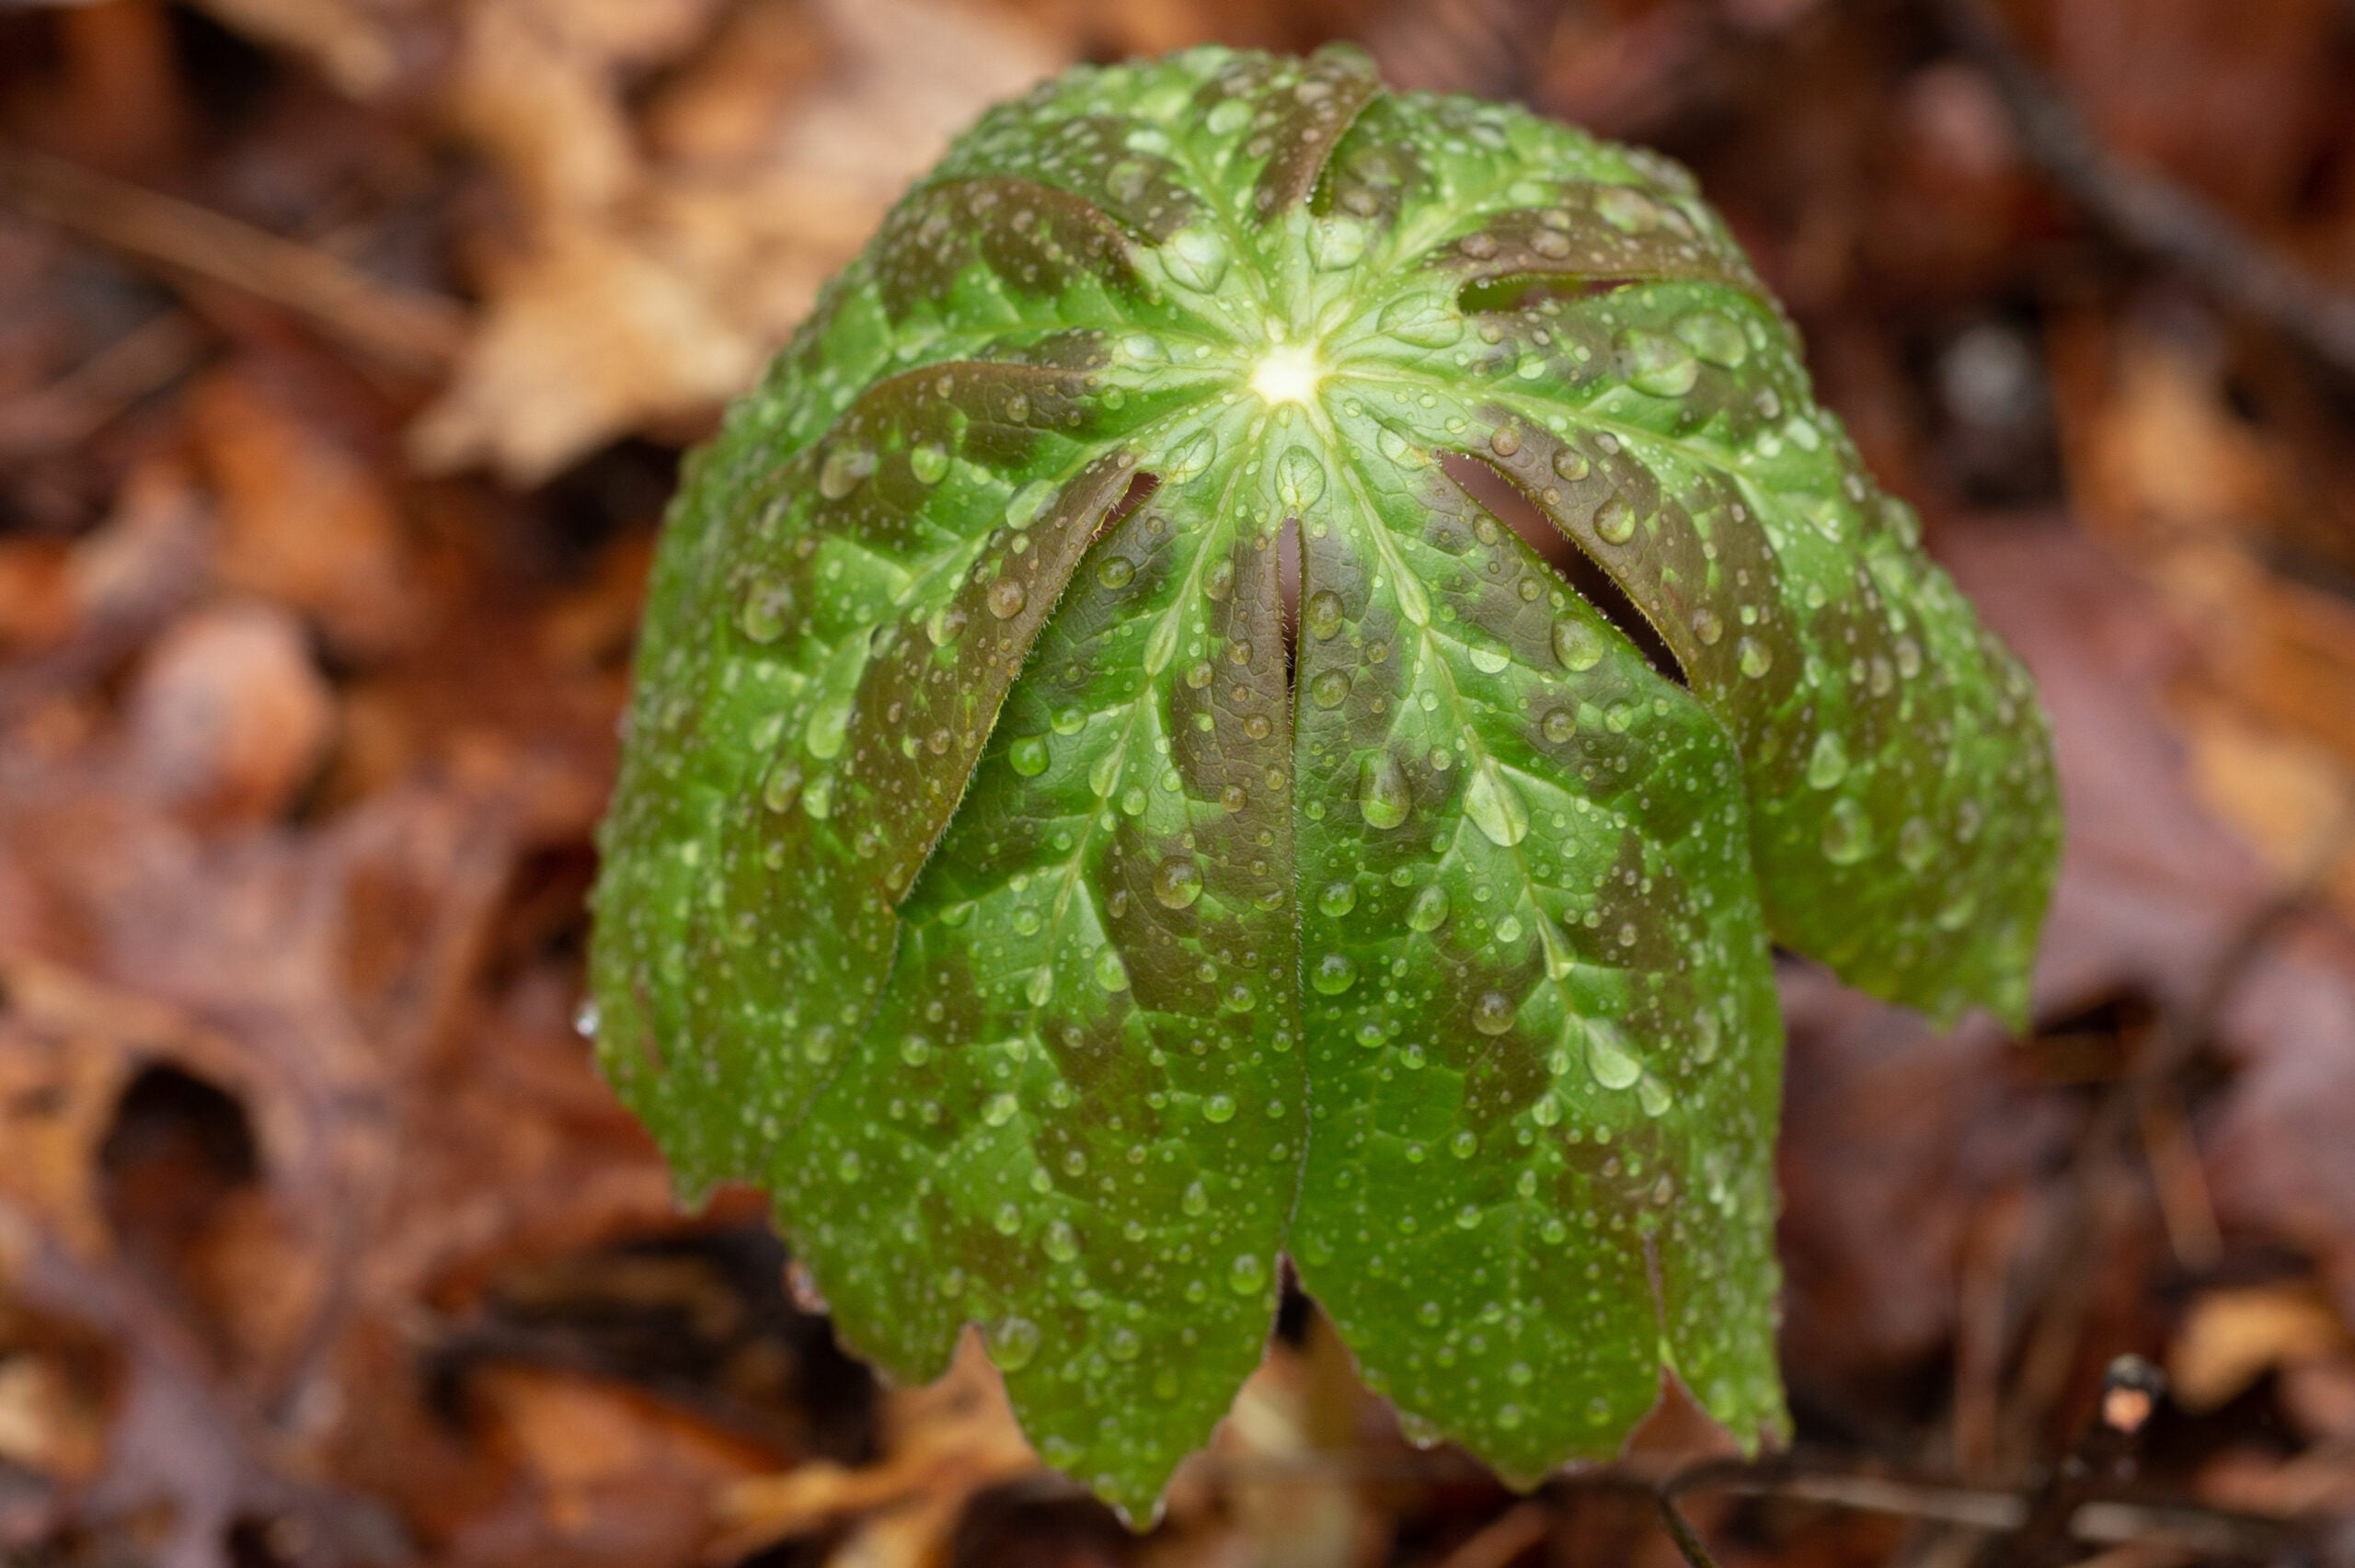 podophyllum-peltatum-emerging-leaf-raindrops